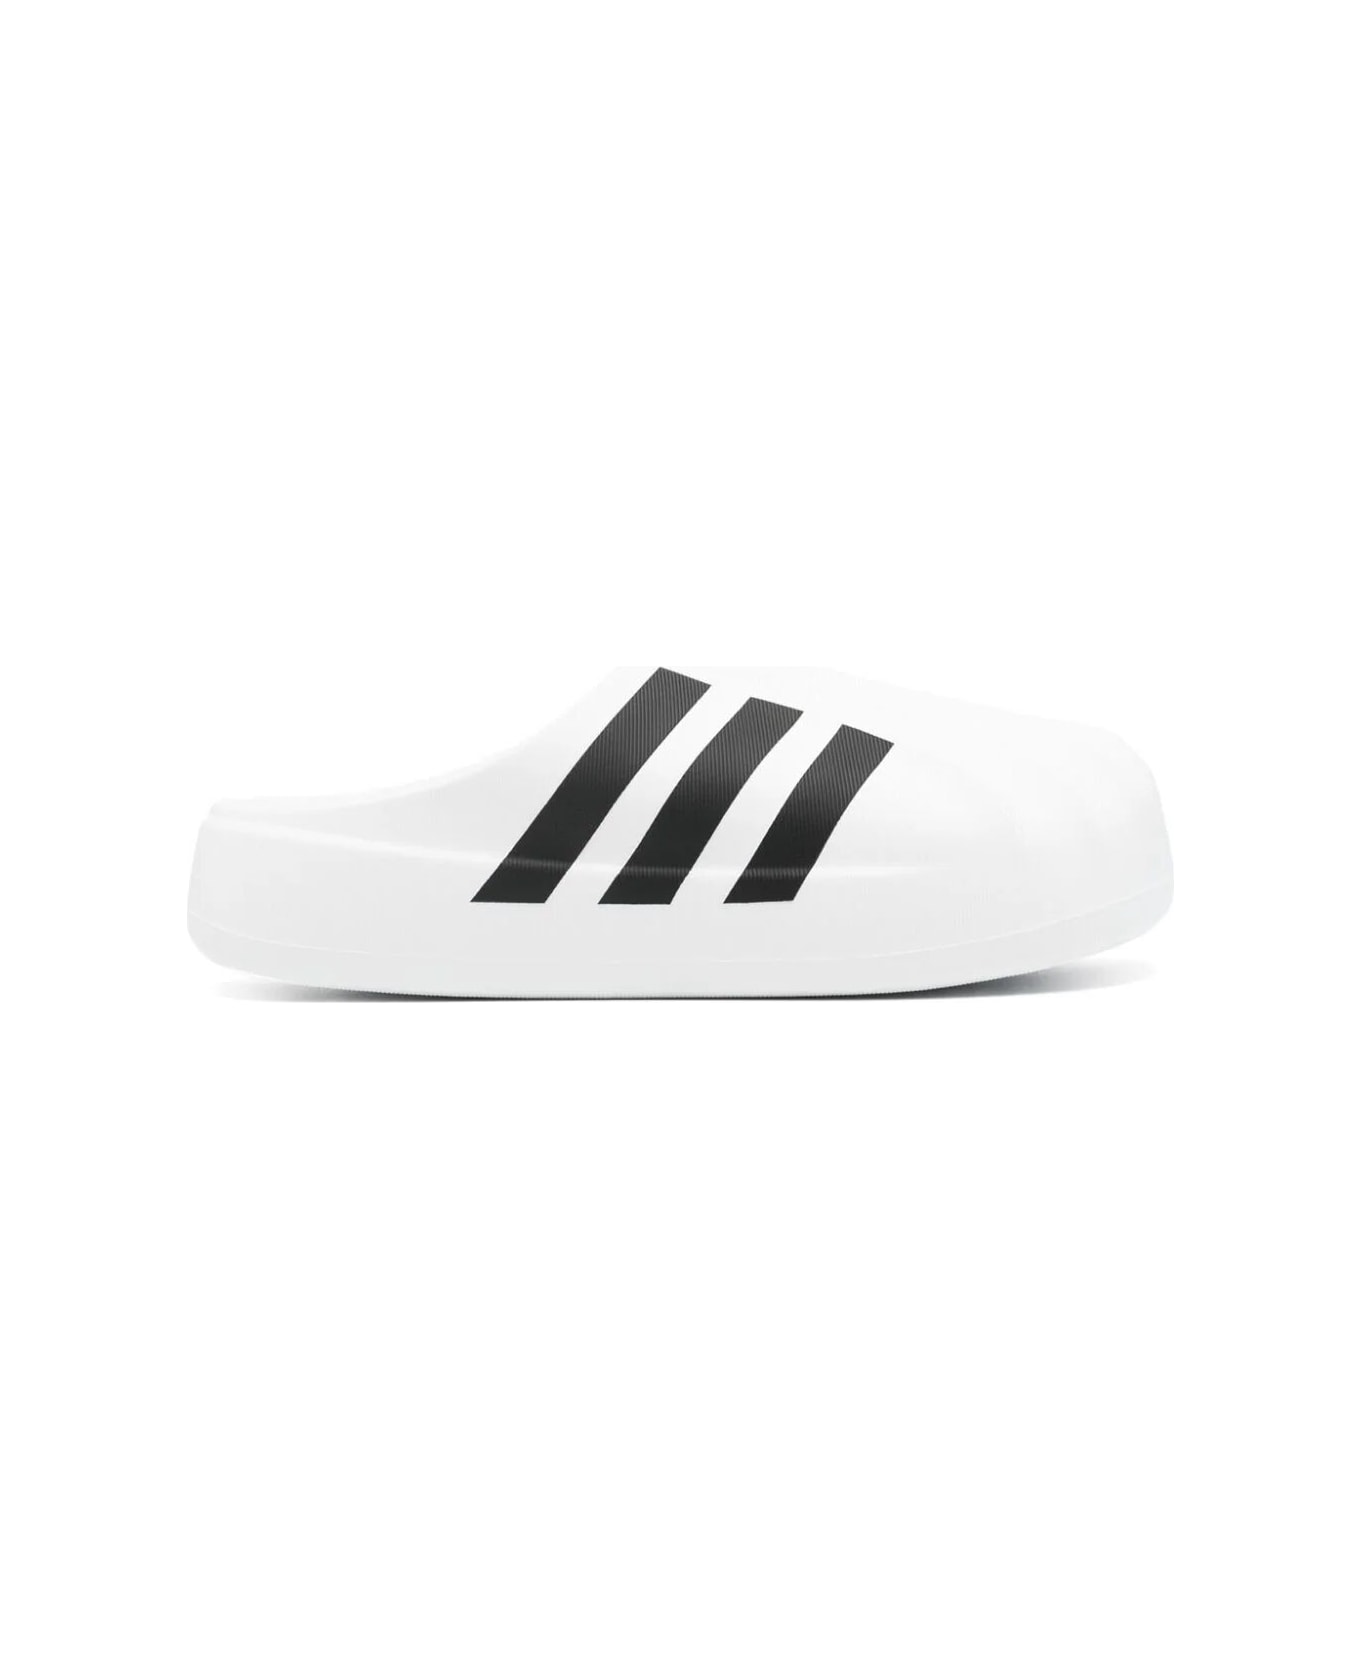 Adidas Adifom Superstar Mu Sneakers - Ftwwht Cblack Ftwwht スニーカー